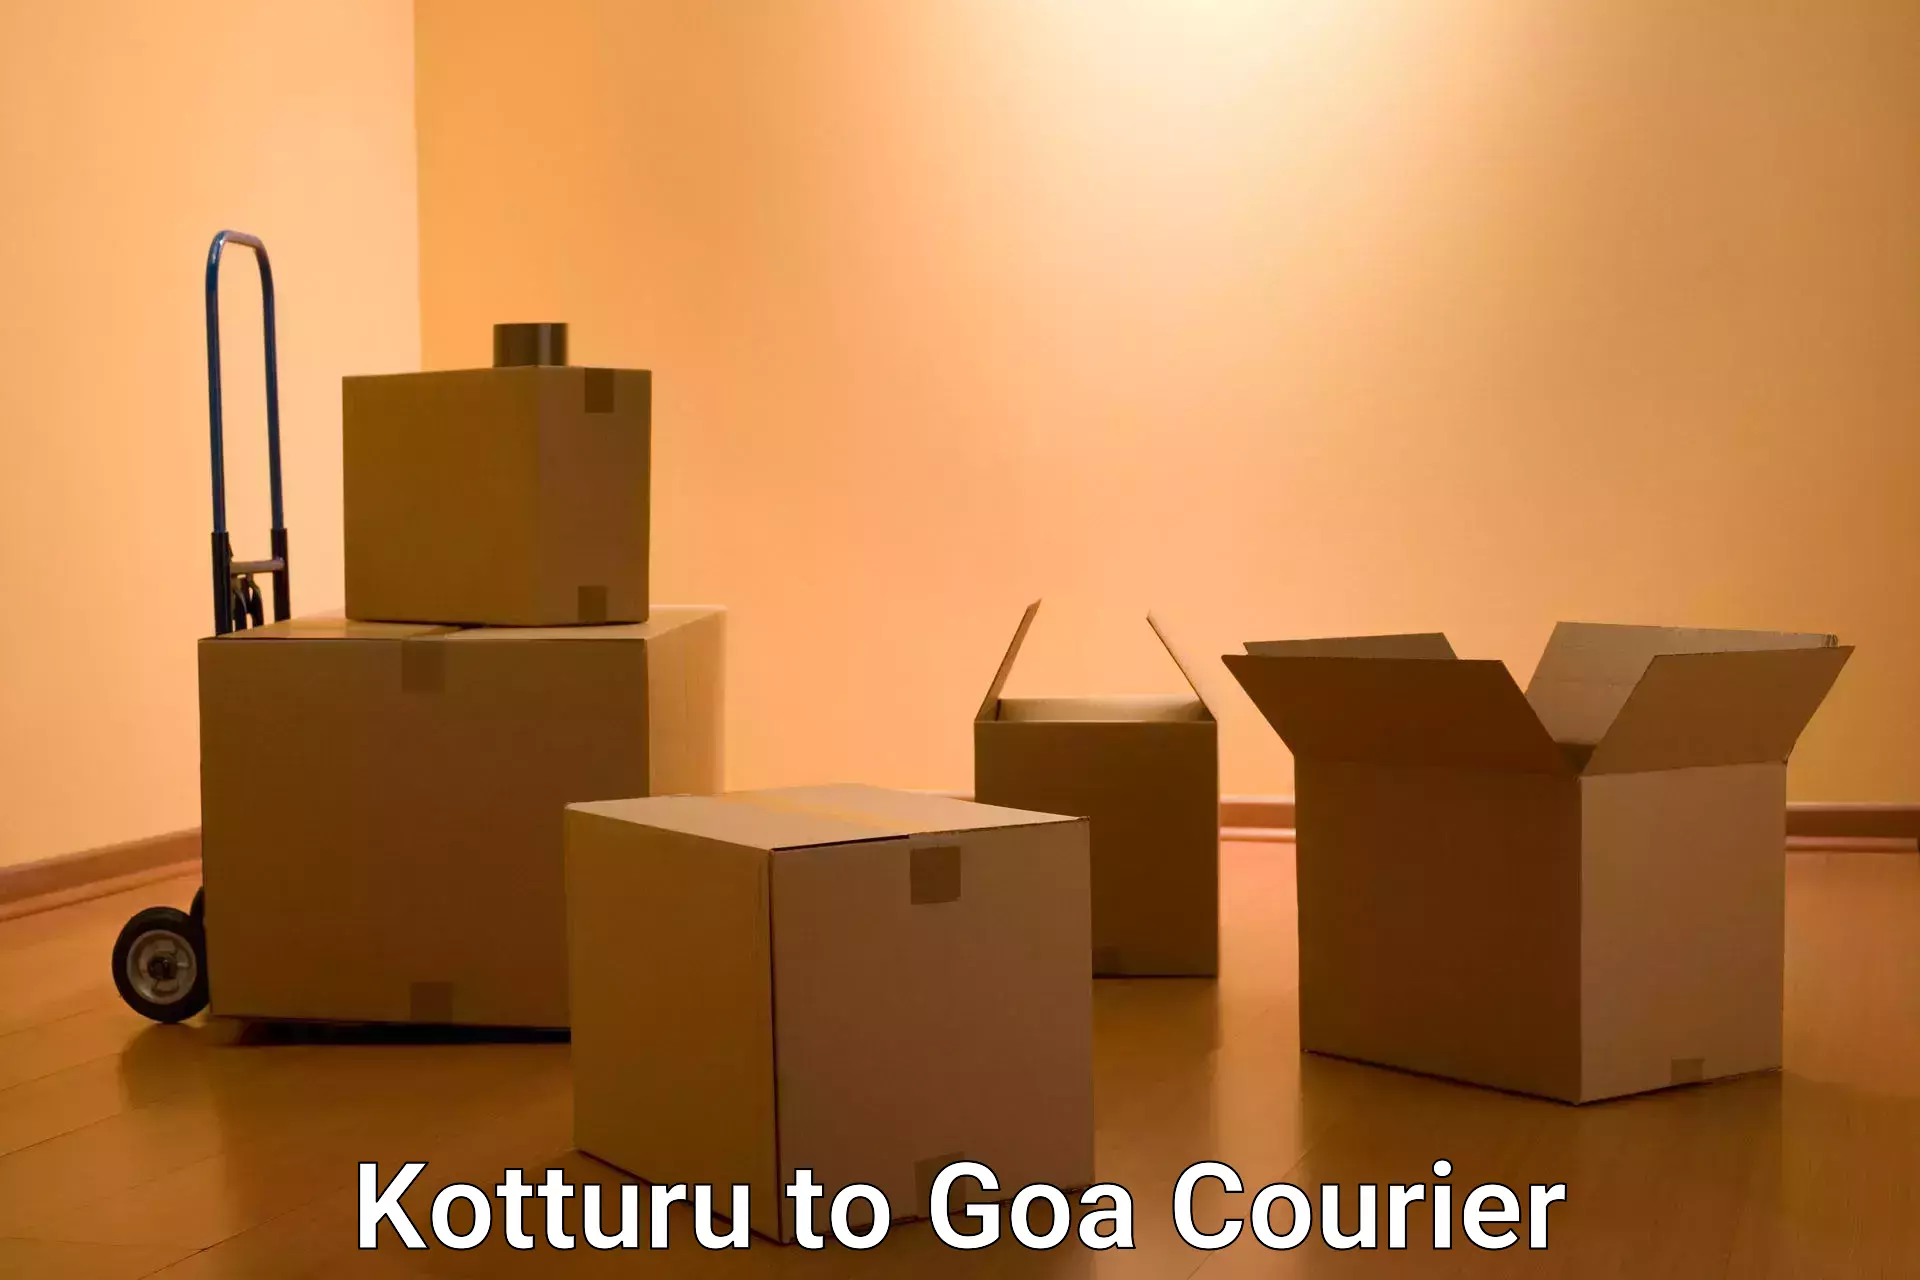 Cost-effective courier options Kotturu to Goa